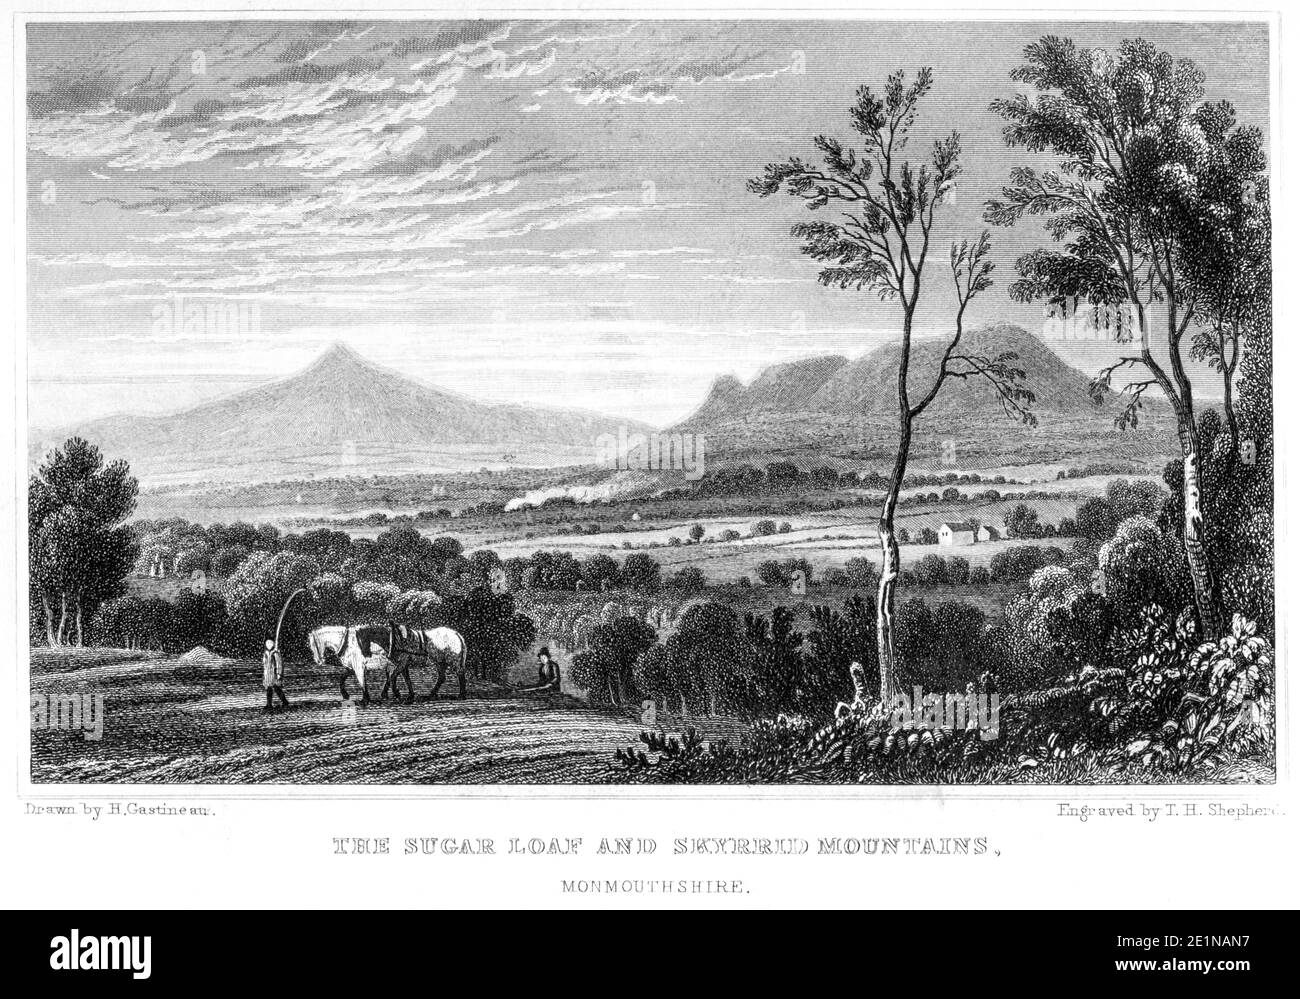 Un'incisione del Pan di zucchero e delle montagne di Skyrrid Monmouthshire ha scannerizzato ad alta risoluzione da un libro pubblicato nel 1854. Creduto esente da copyright. Foto Stock